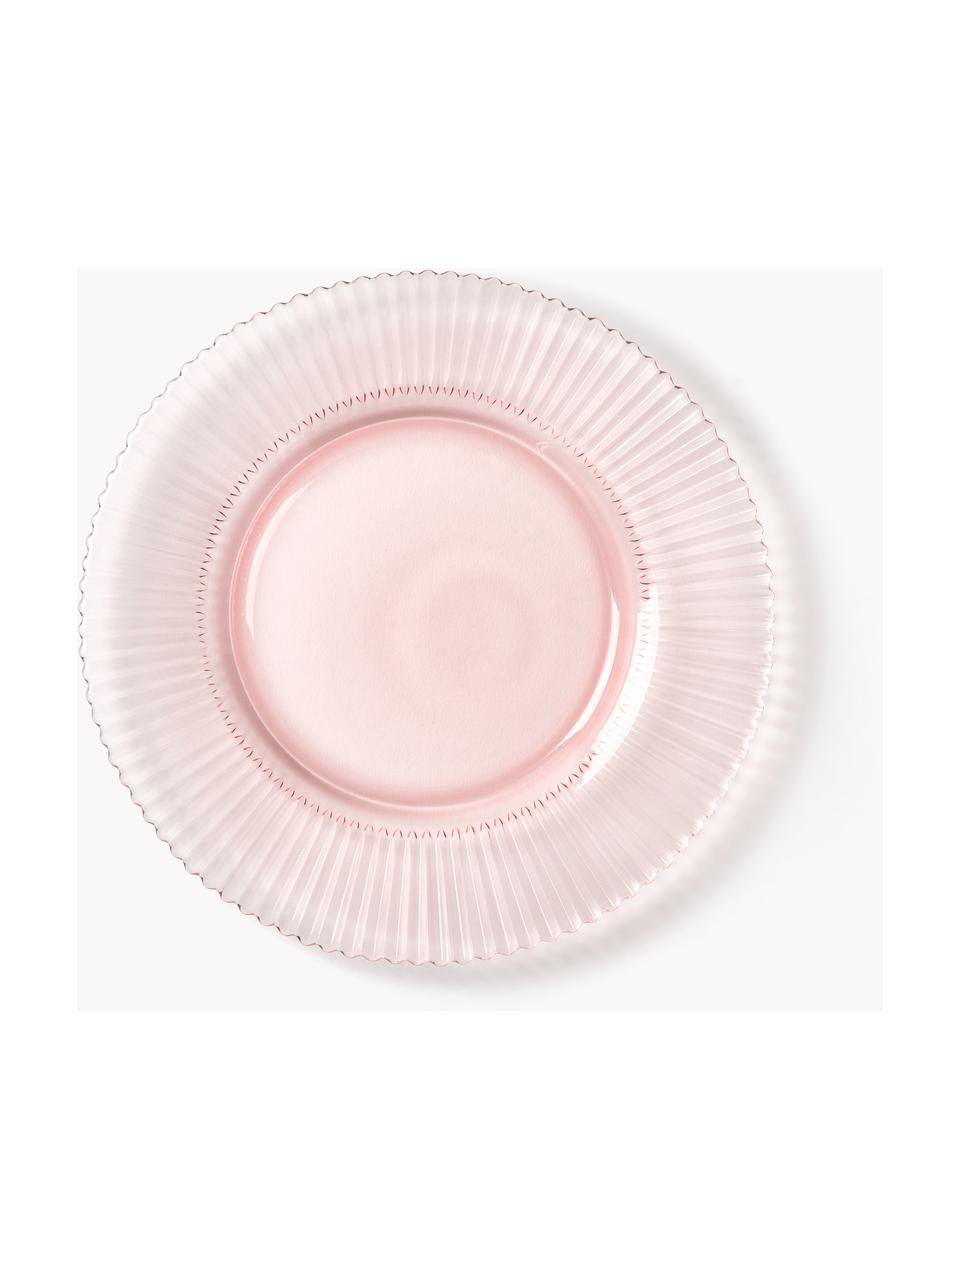 Piatti da colazione con struttura millerighe Effie 4 pz, Vetro, Rosa chiaro, Ø 21 cm